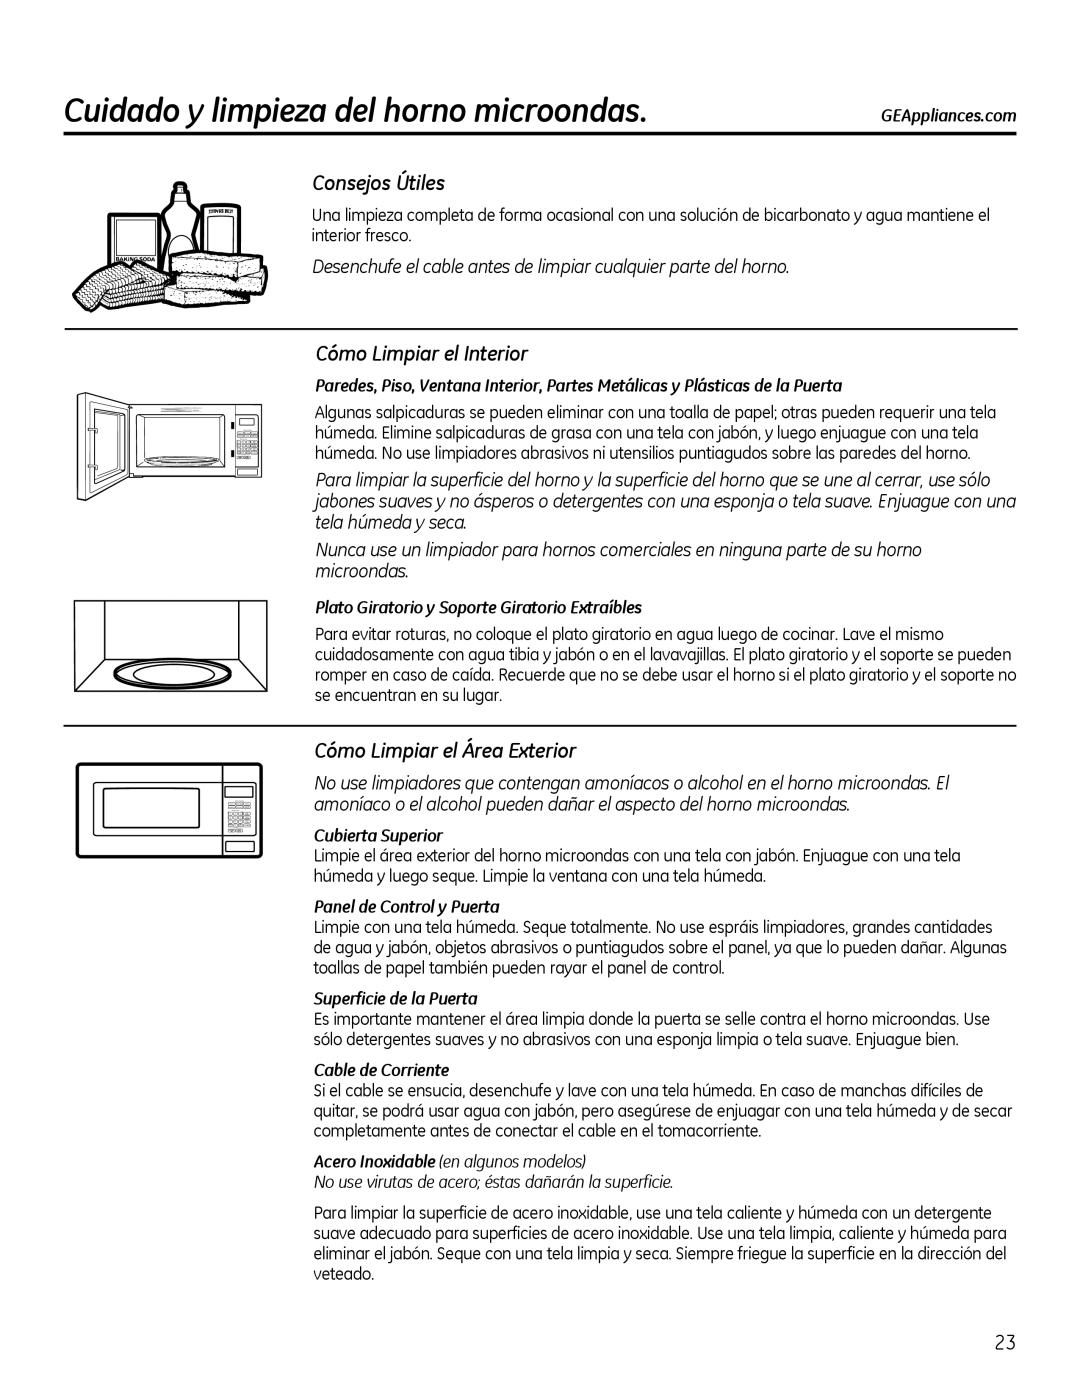 GE Microwave Oven owner manual Cuidado y limpieza del horno microondas, Consejos Útiles, Cómo Limpiar el Interior 